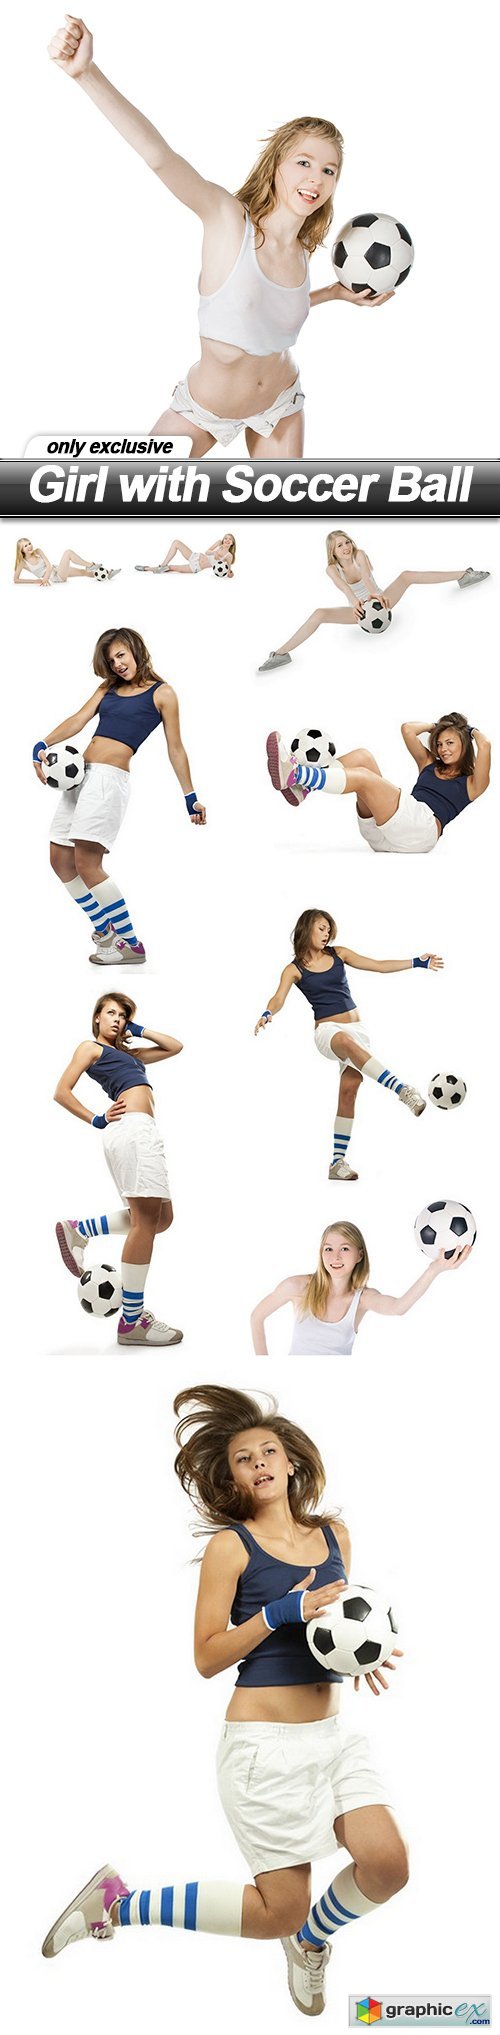 Girl with Soccer Ball - 10 UHQ JPEG